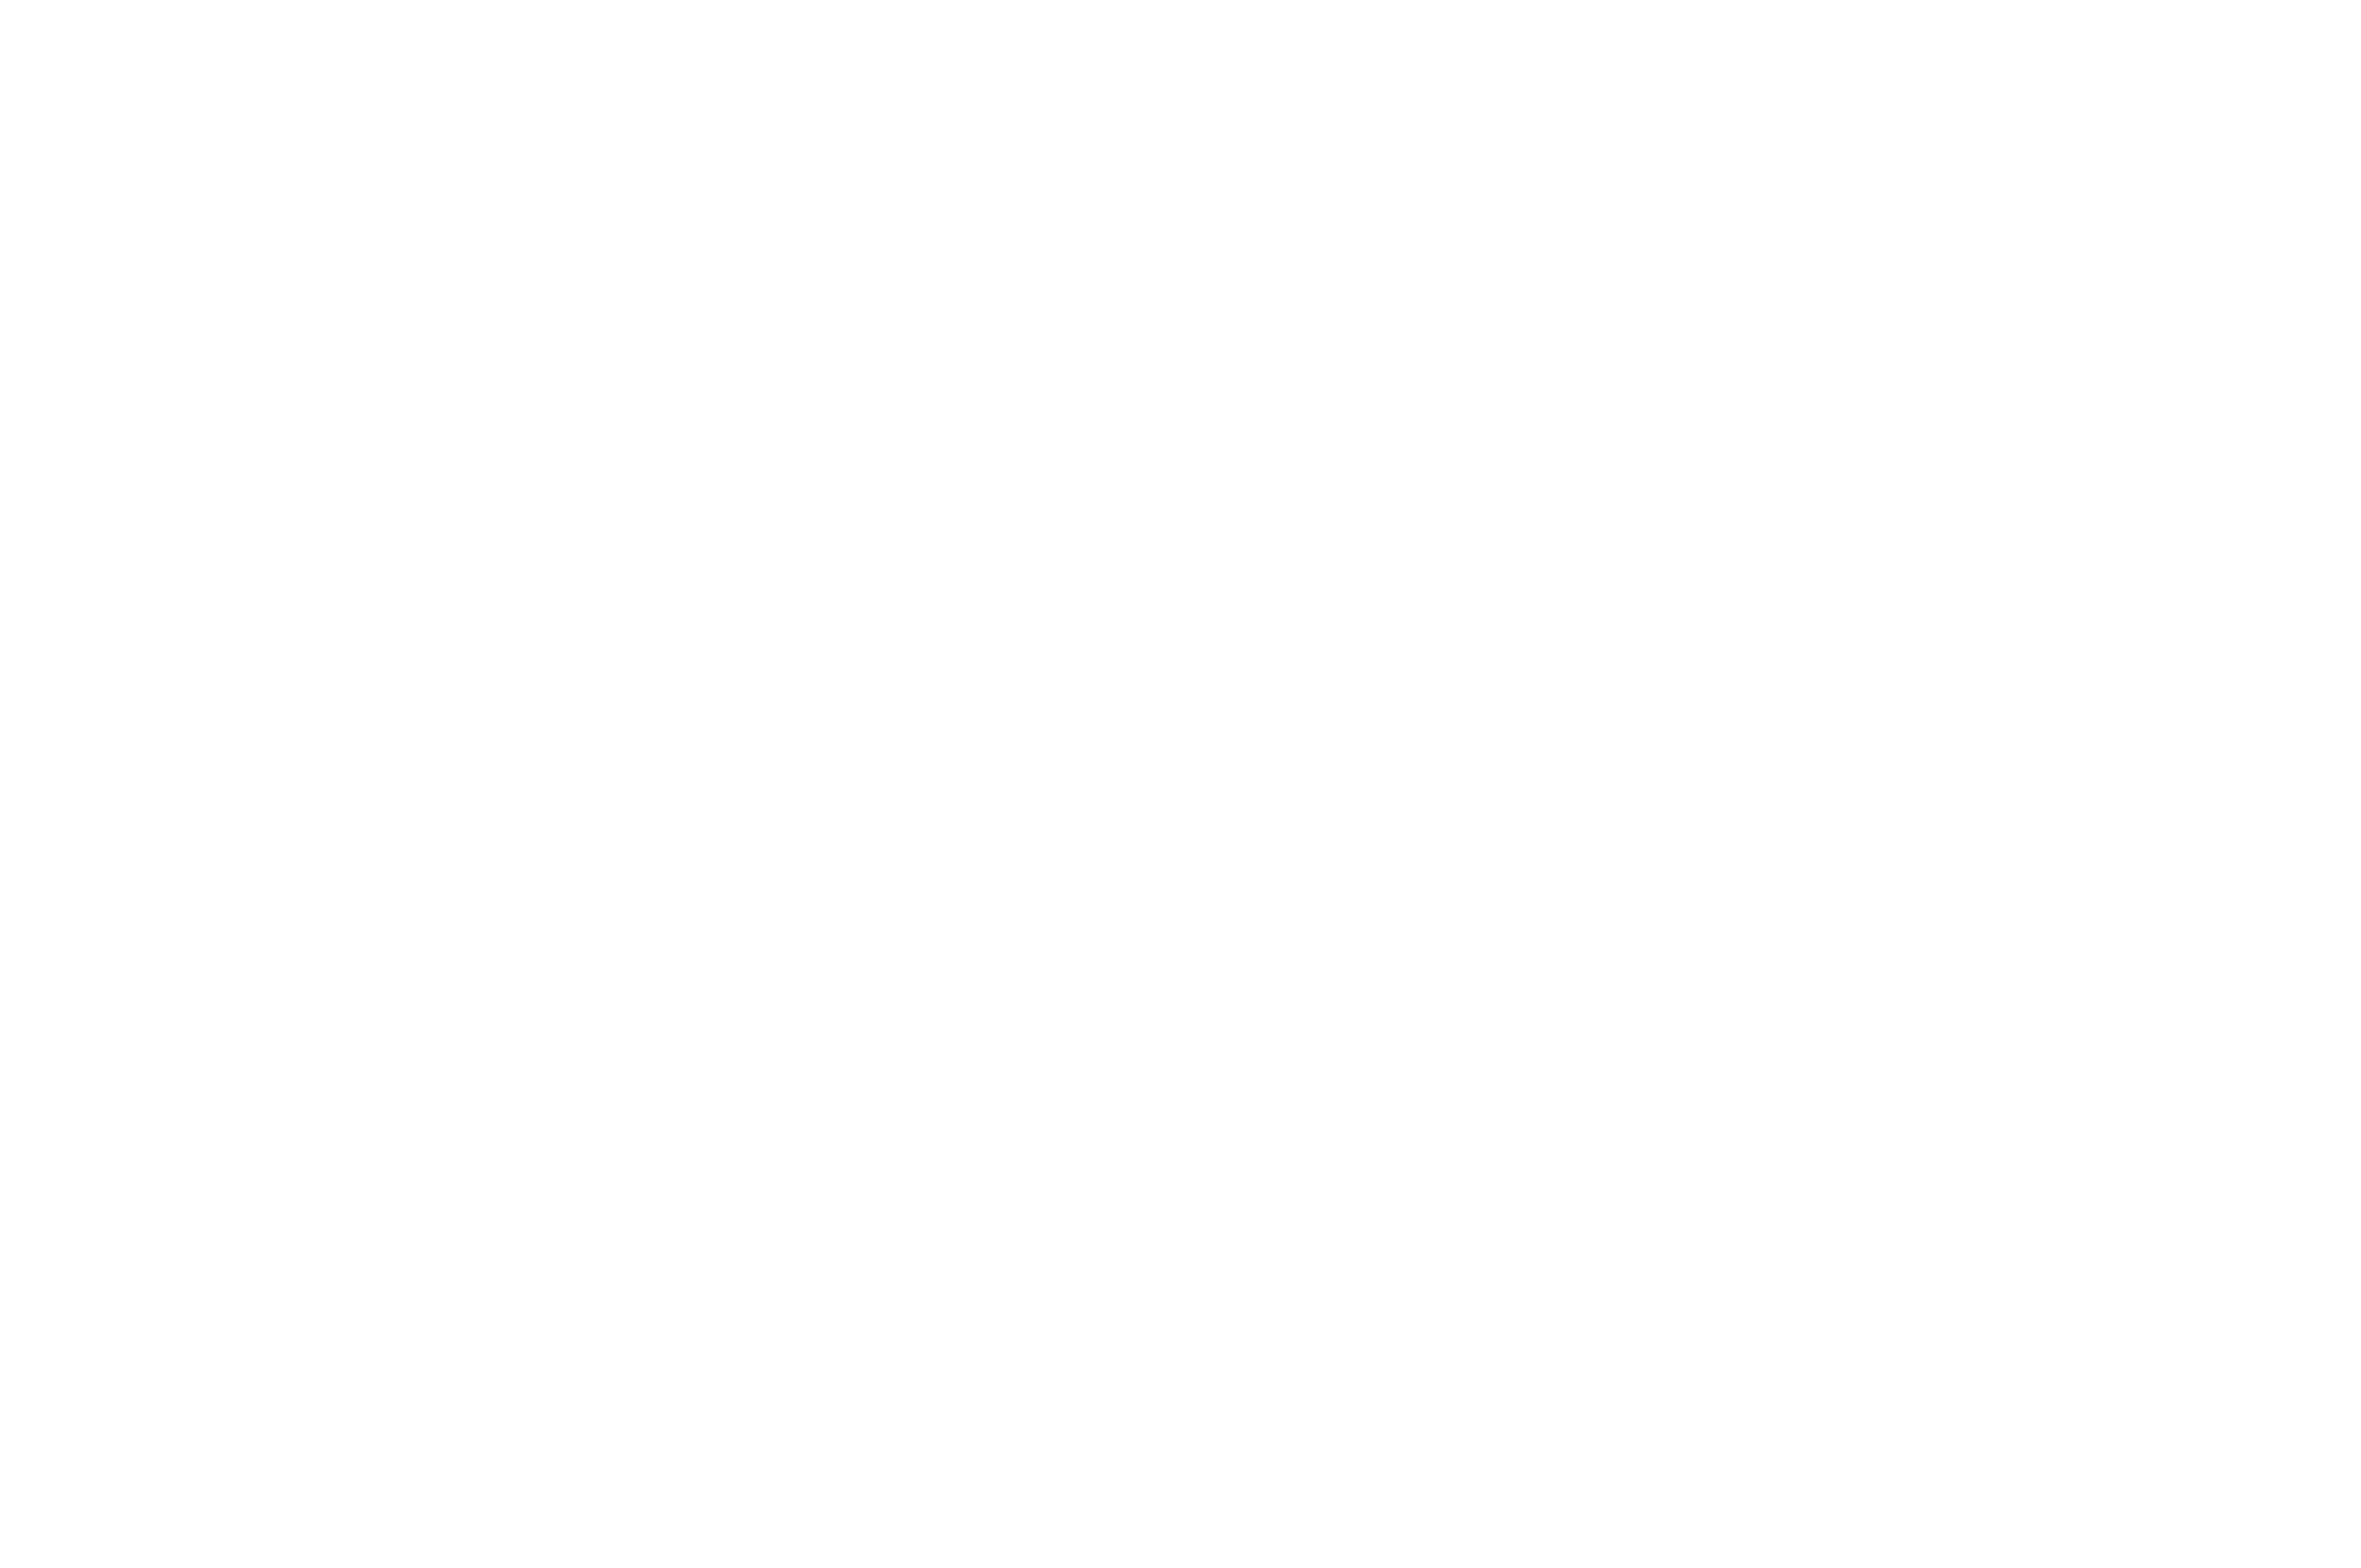 Frank Wiesen